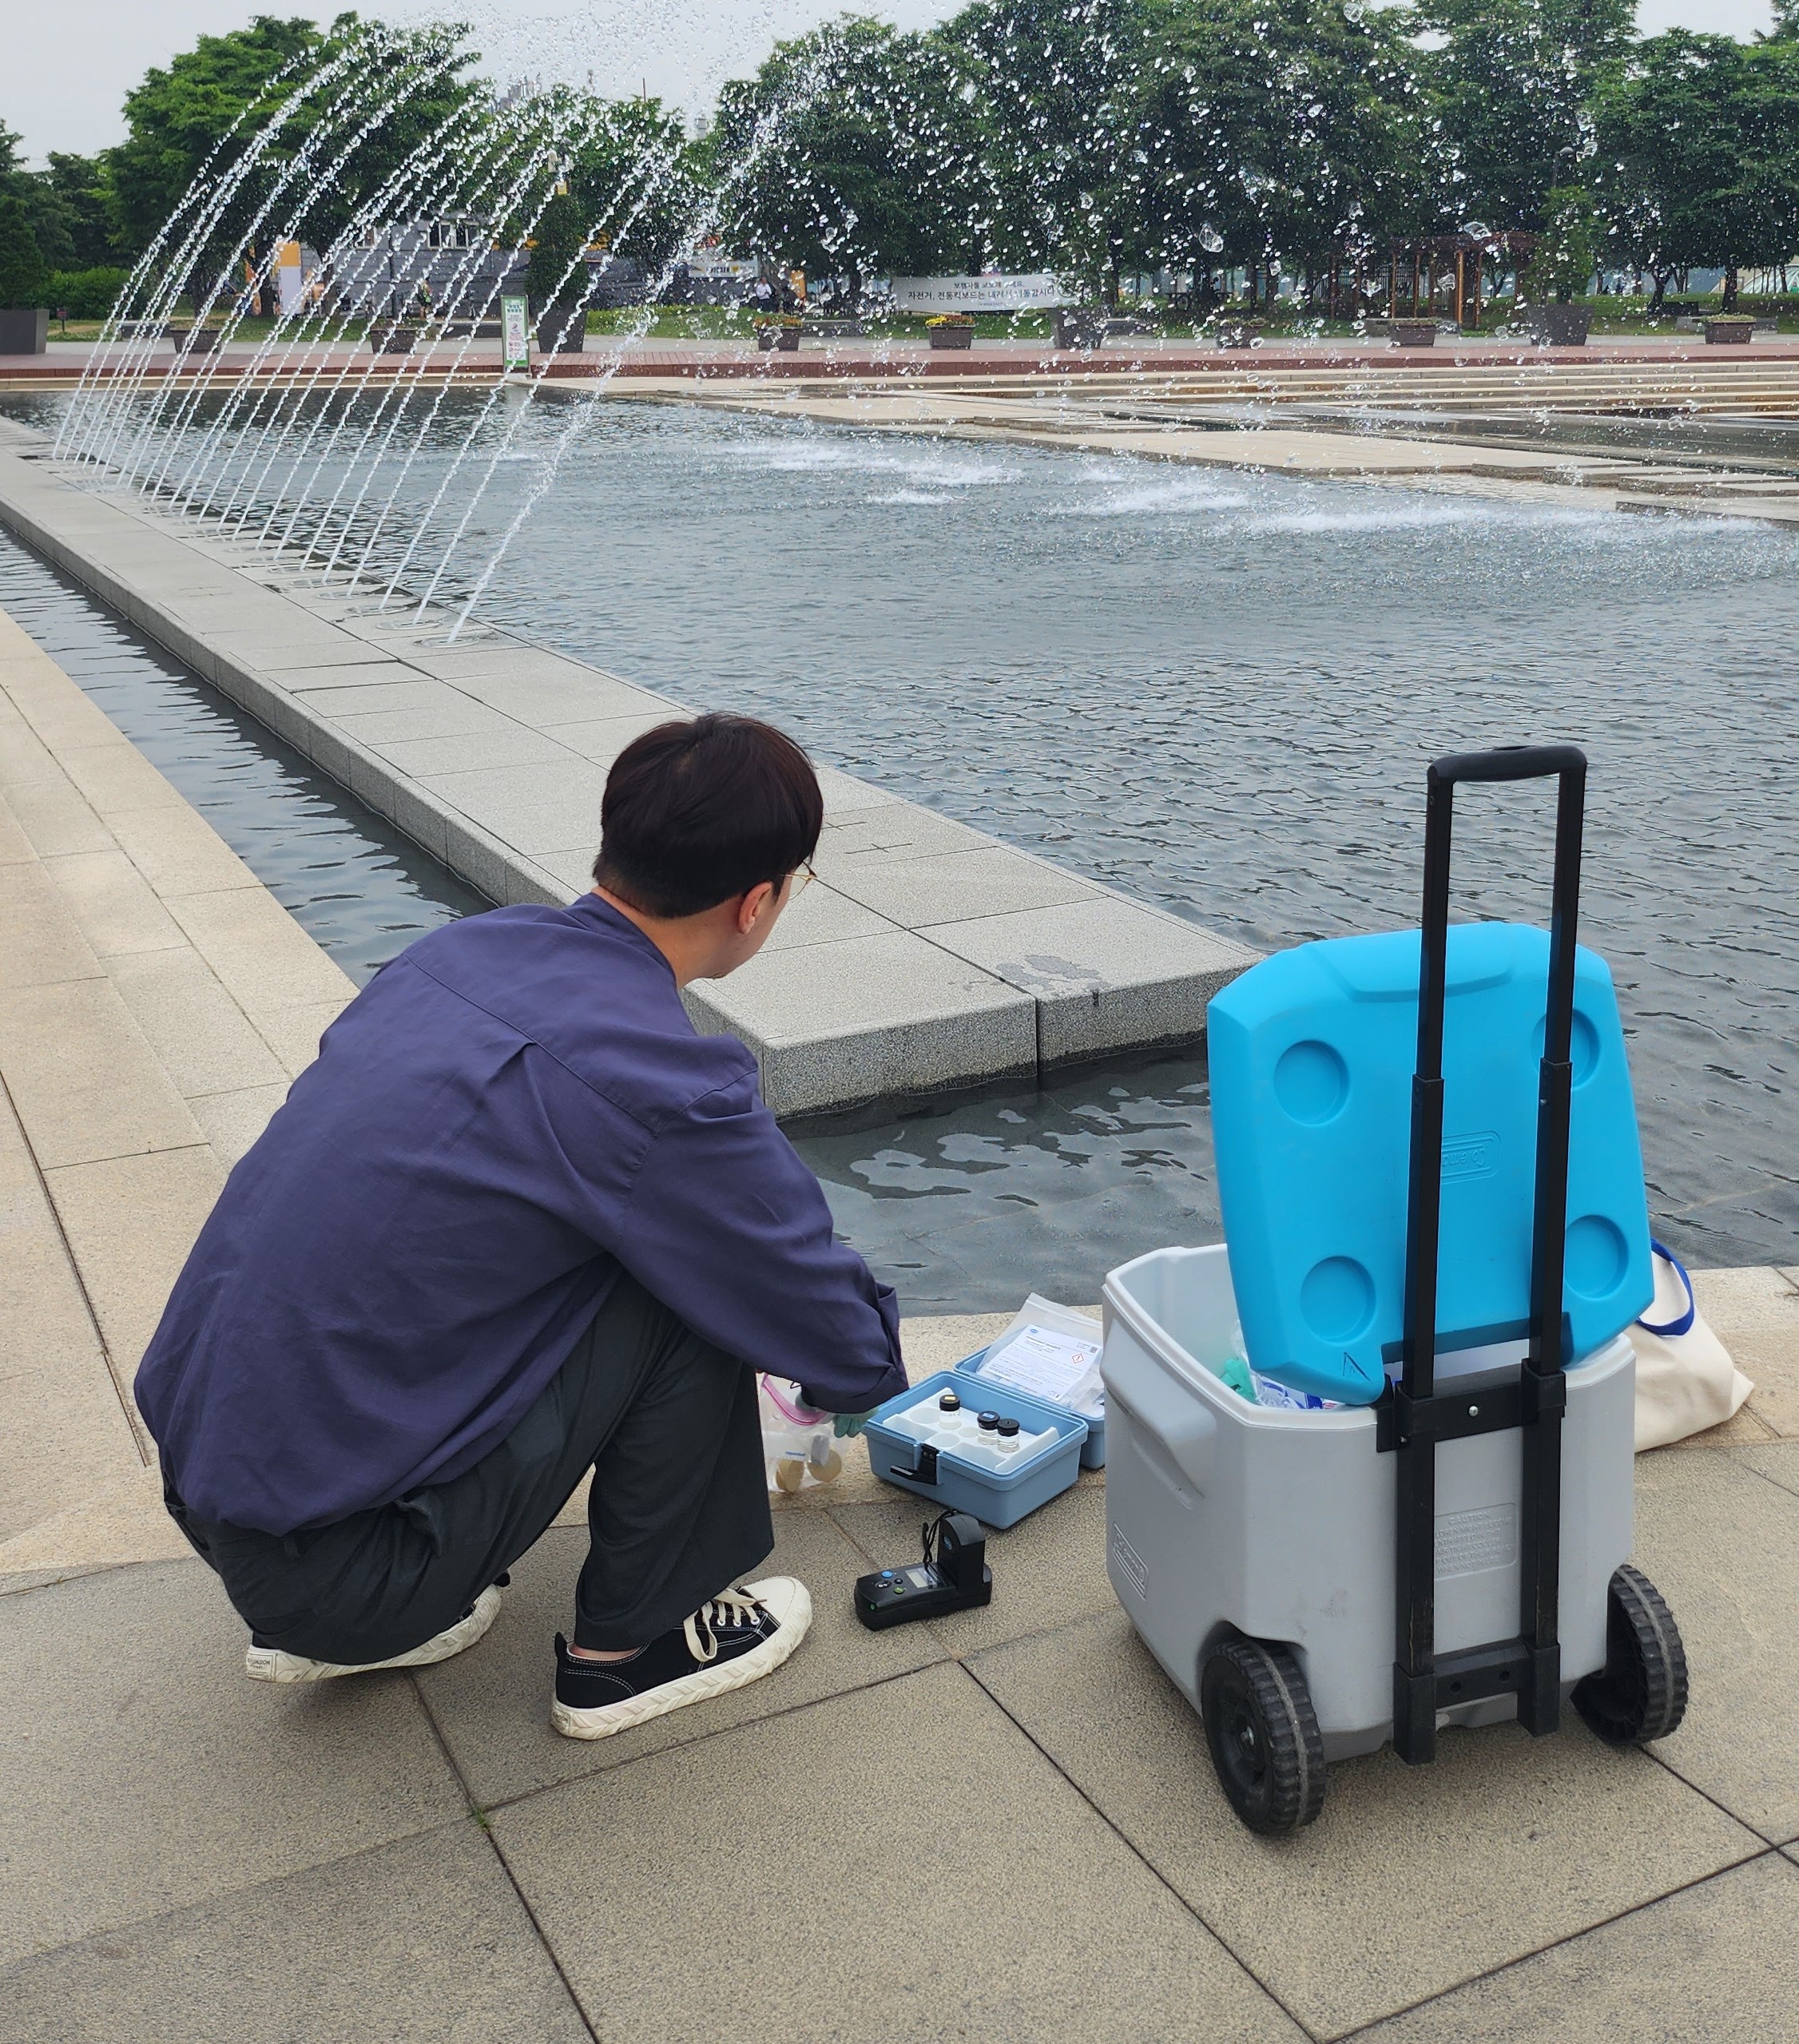 한강유역환경청 현장점검반이 6월 1일 서울 여의도 한강공원 물놀이장을 점검하고 있다